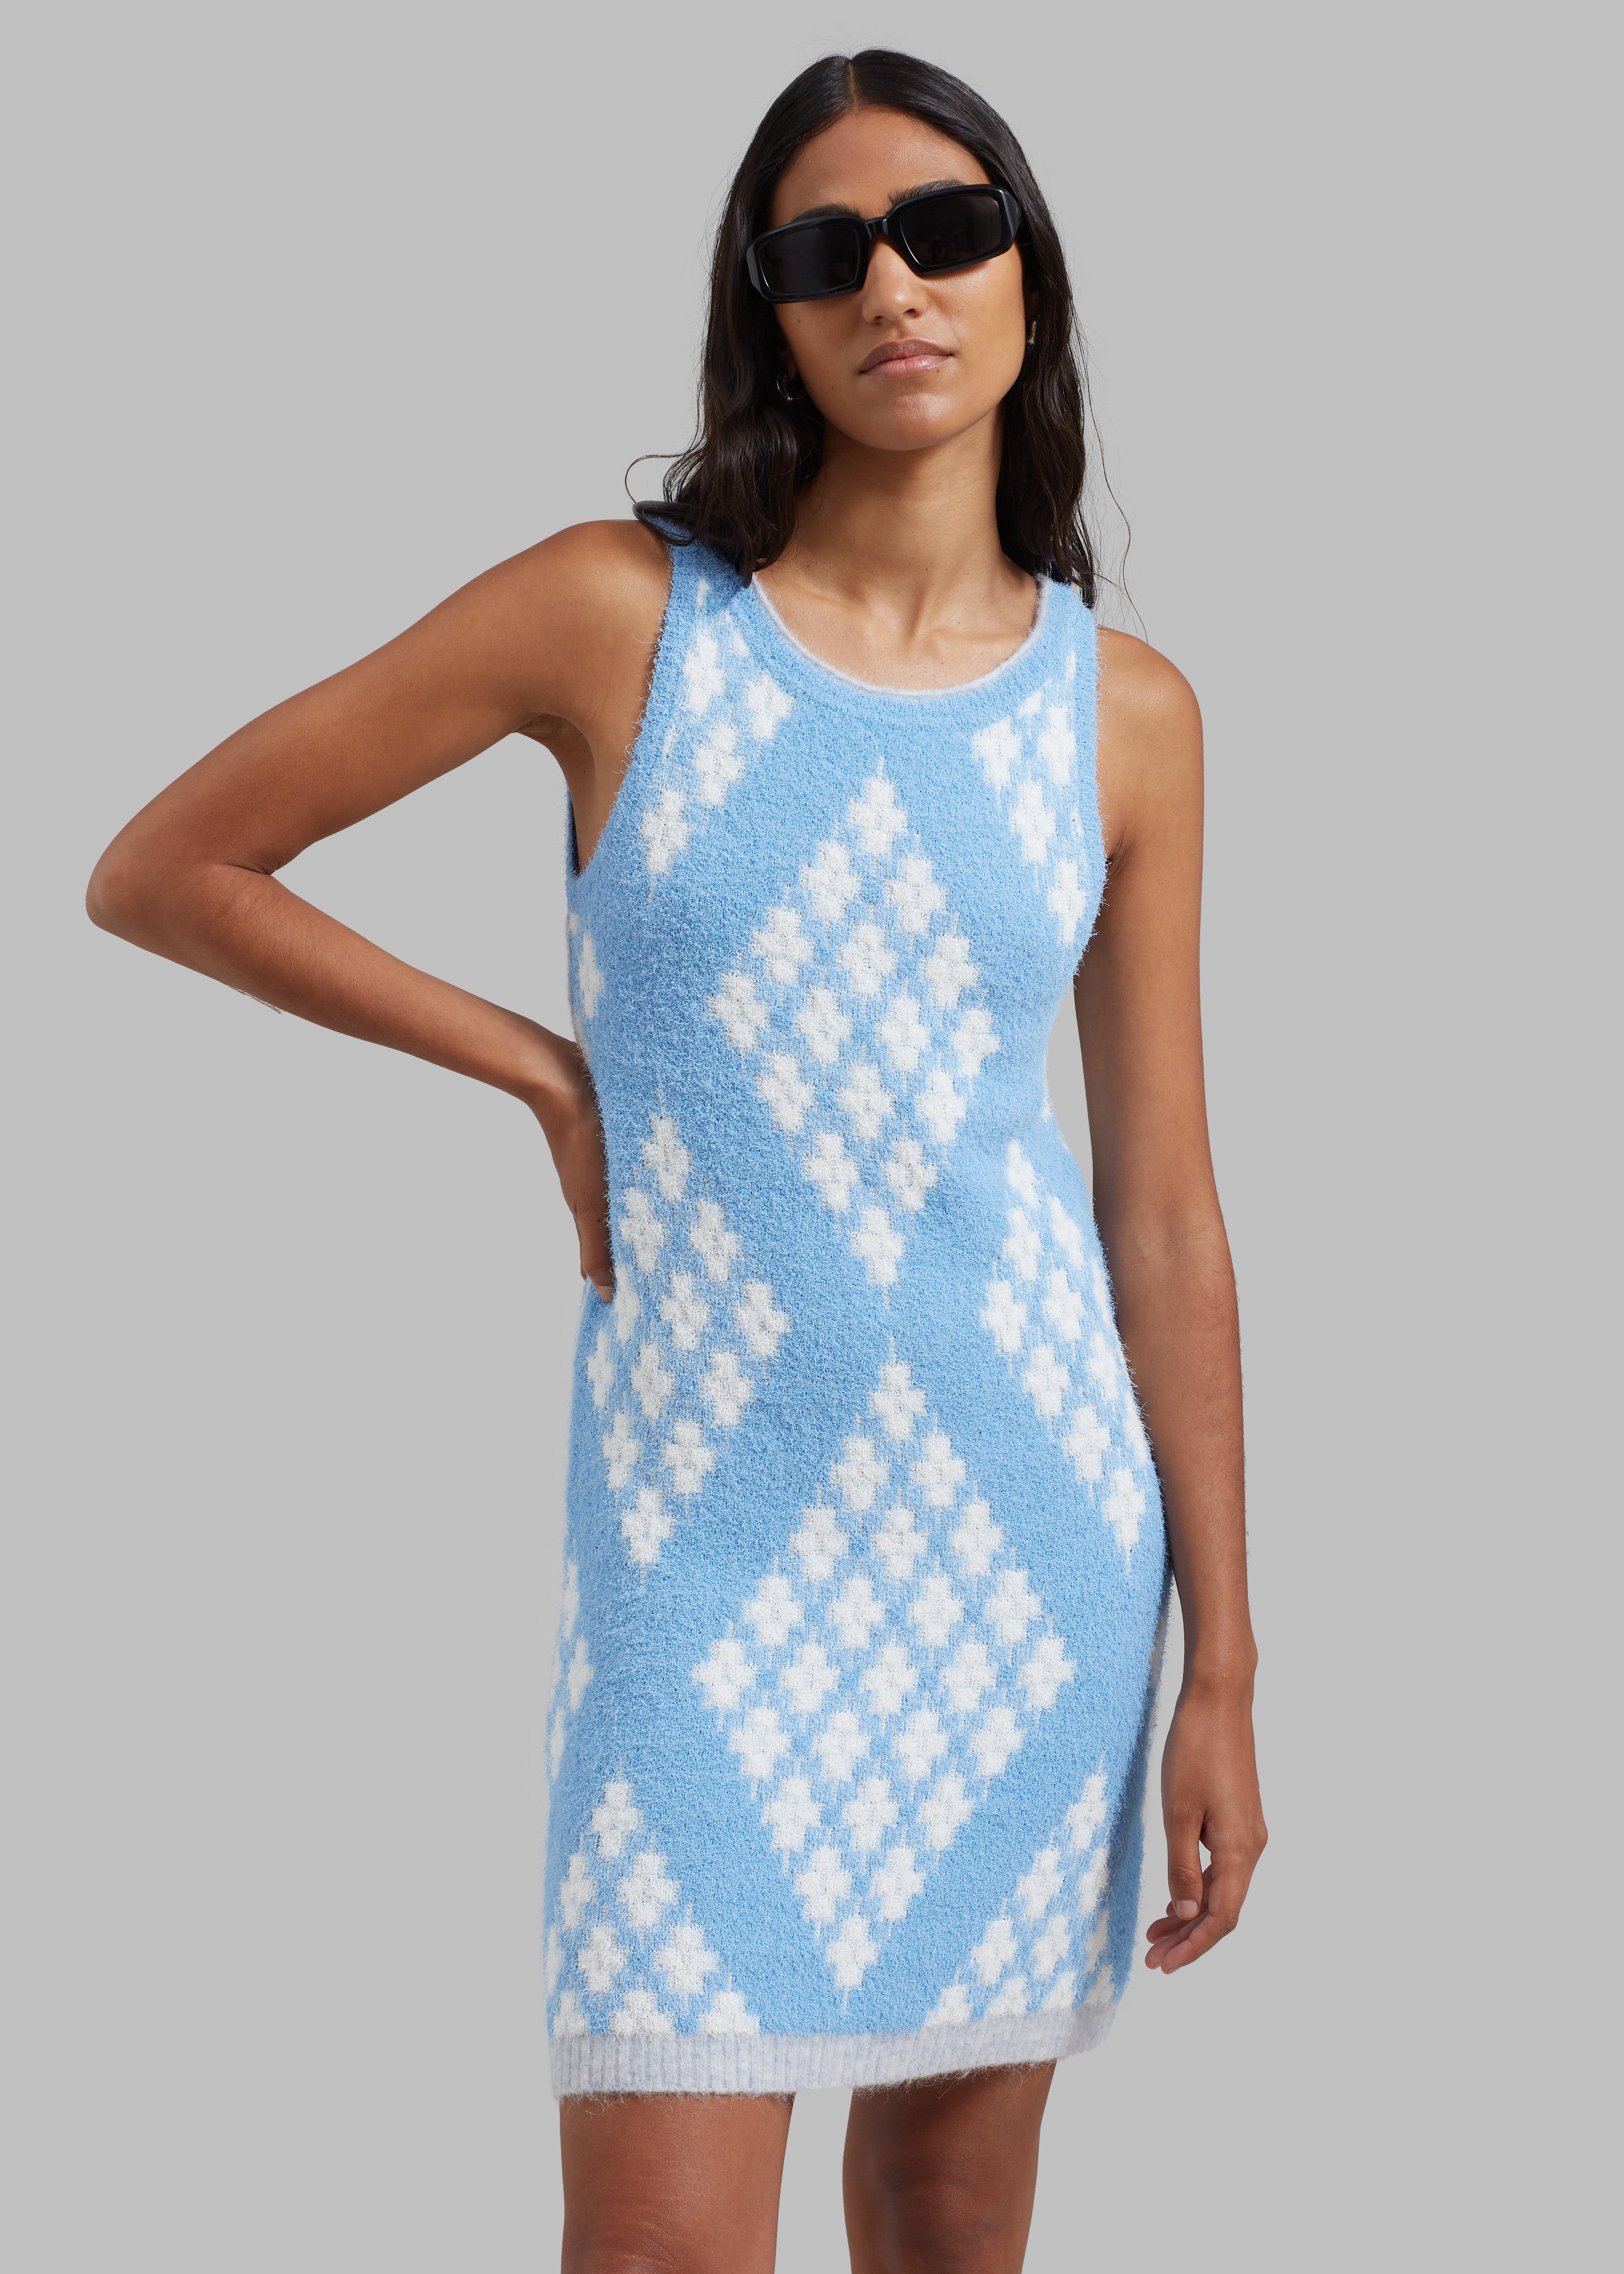 3.1 Phillip Lim Argyle Jacquard Sleeveless Mini Dress - Hudson Blue/Multi - 4